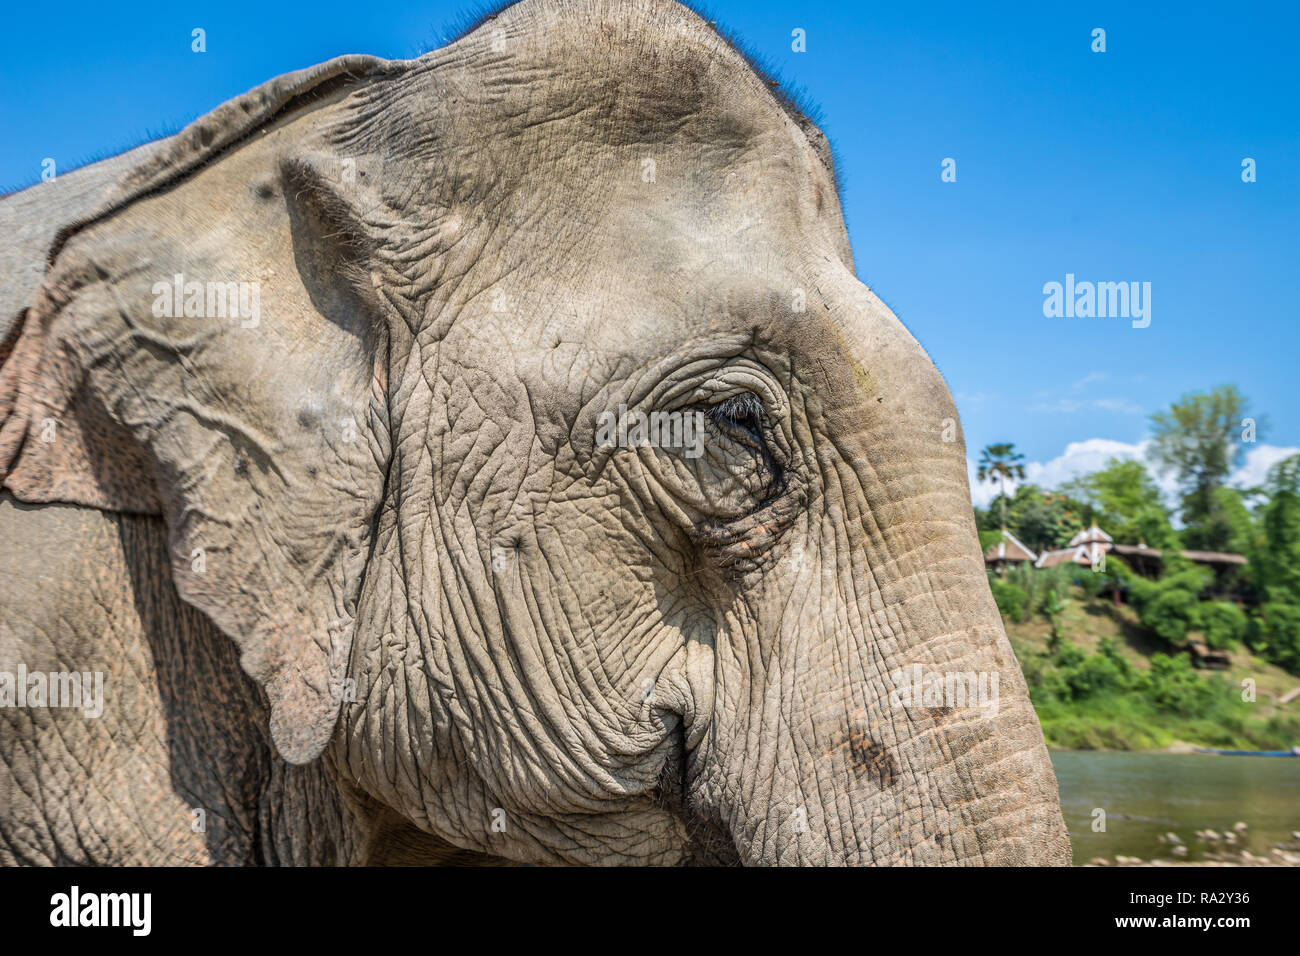 Elephant in Laos Stock Photo